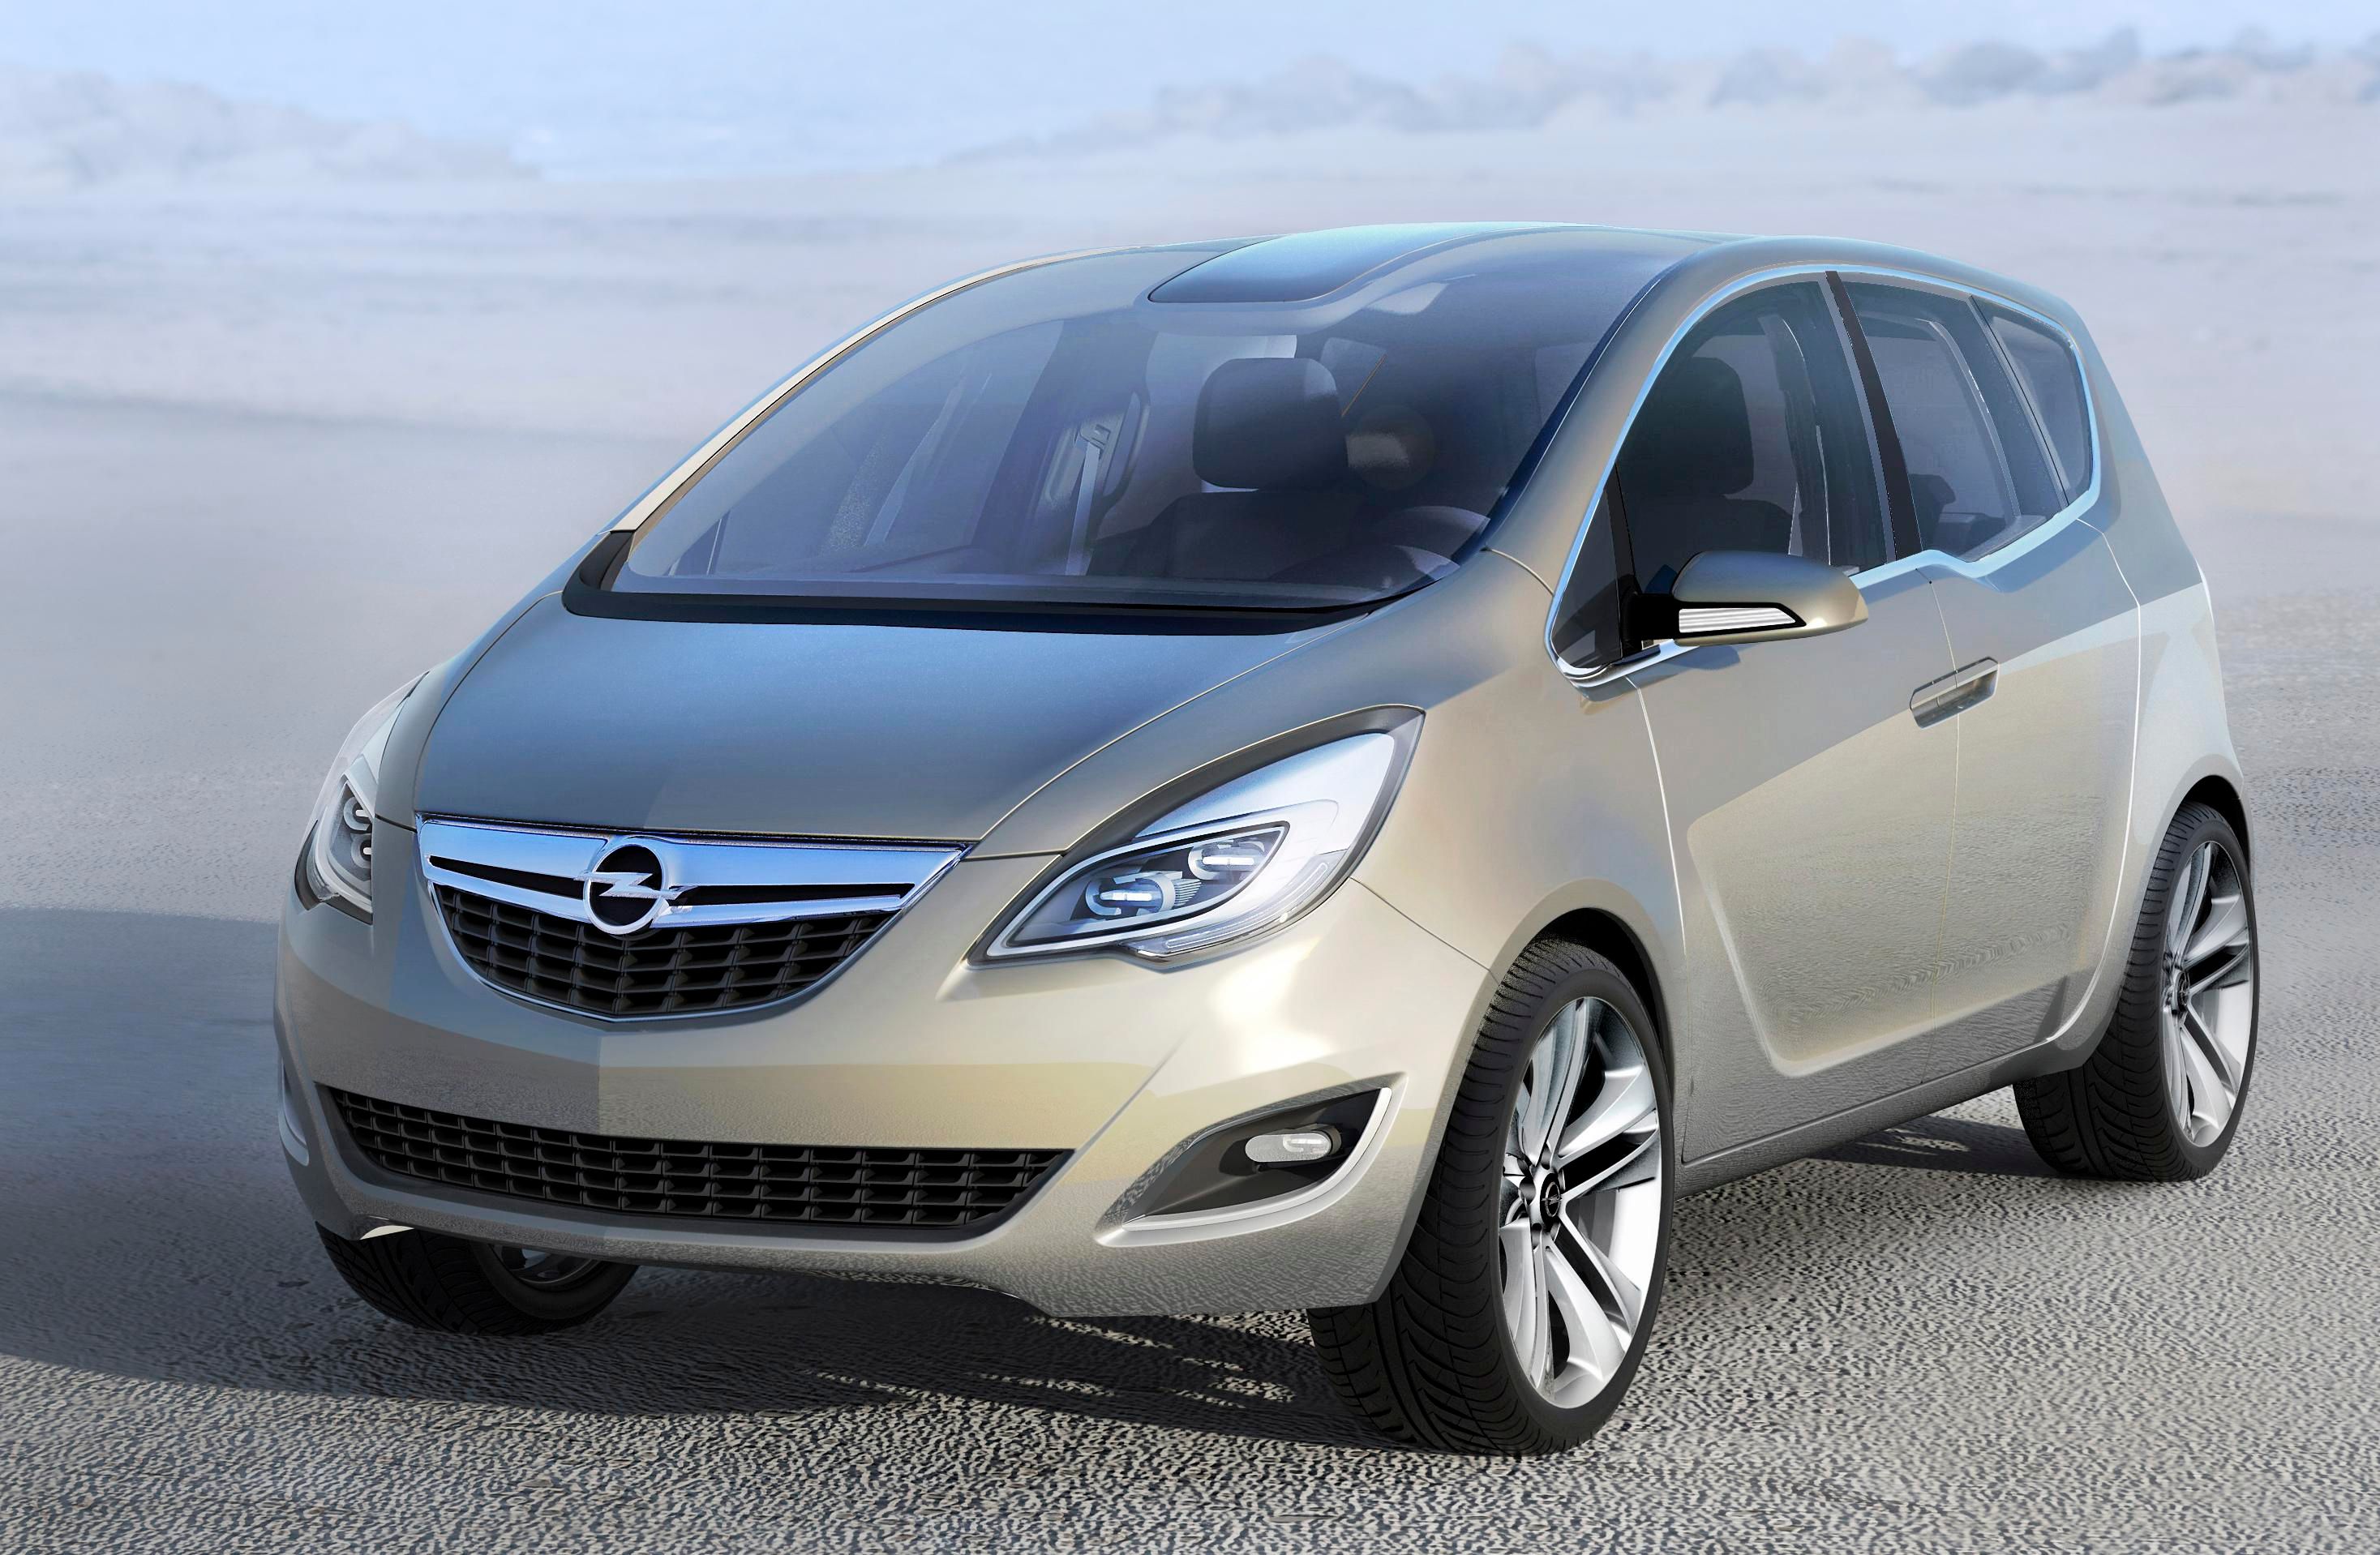 2008 Opel Meriva Concept